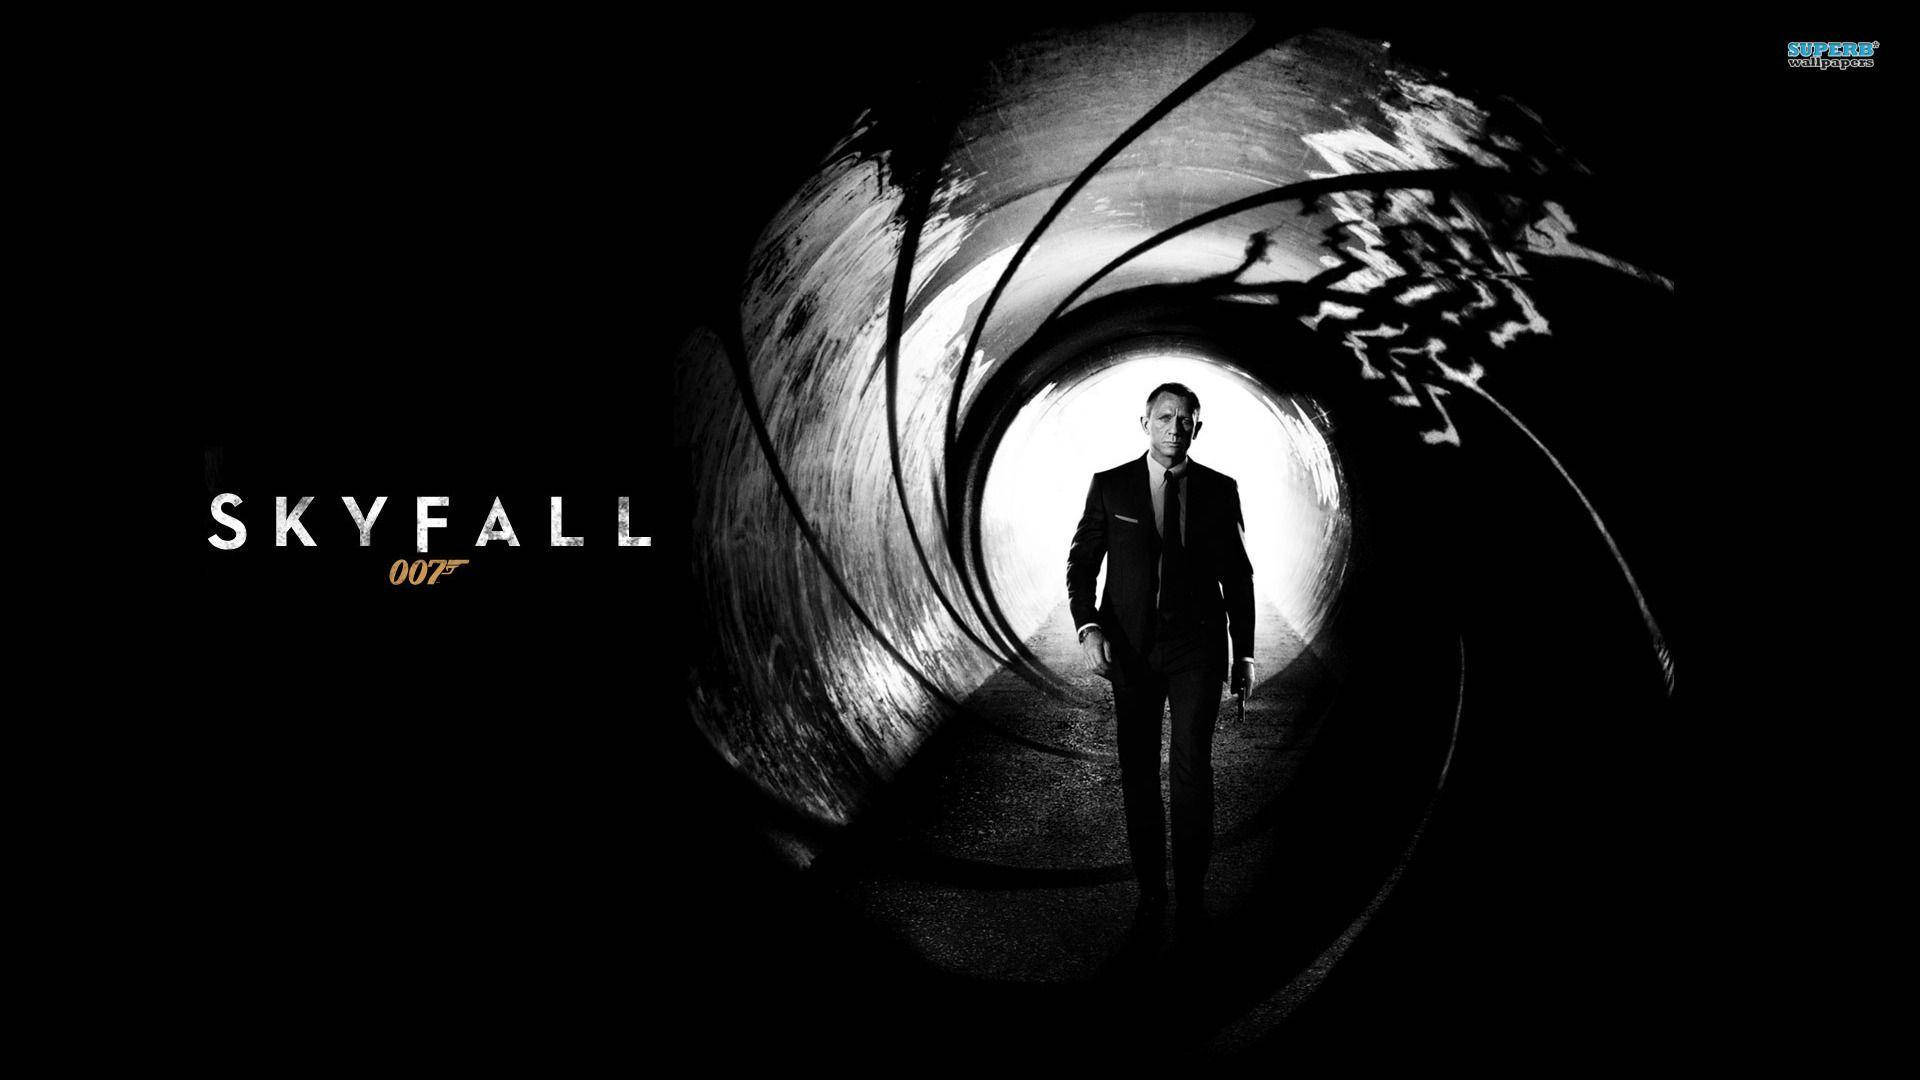 Protagonistade Skyfall, James Bond Fondo de pantalla